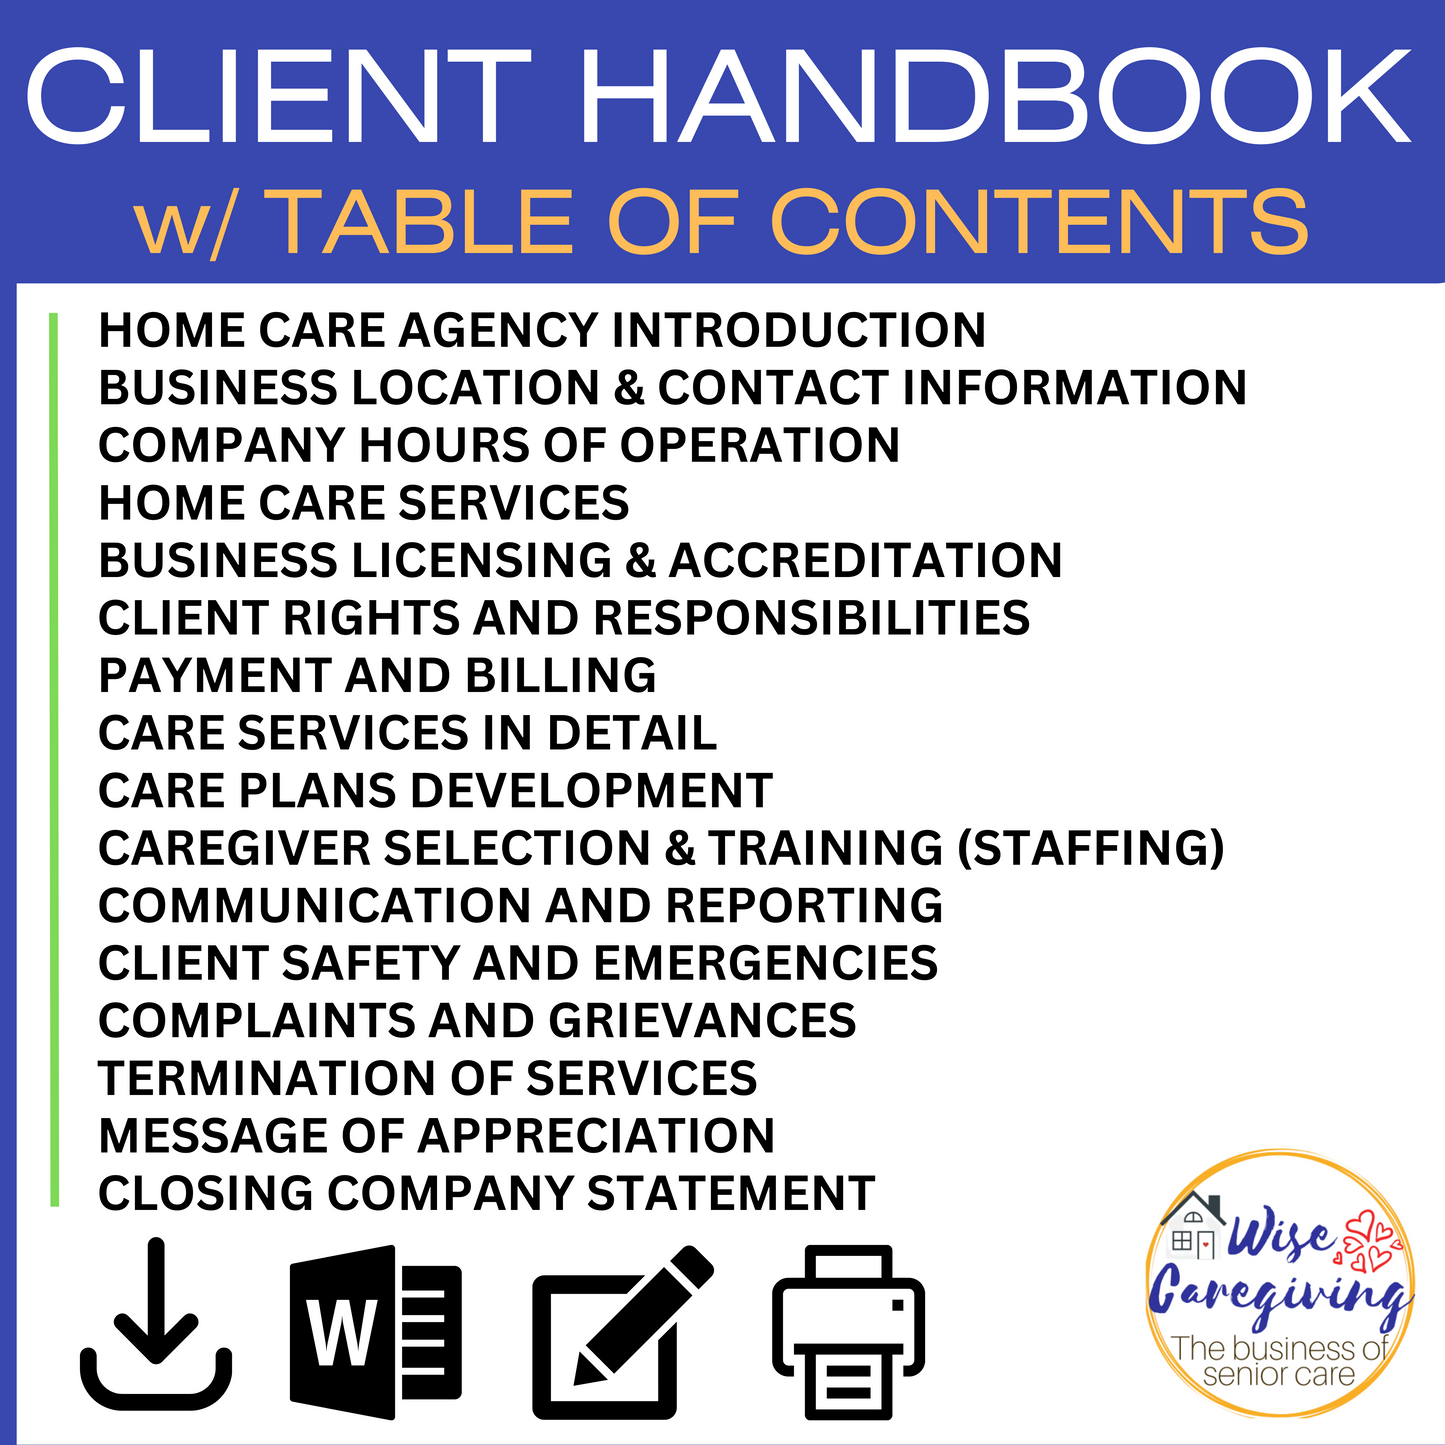 Contents of Client Handbook